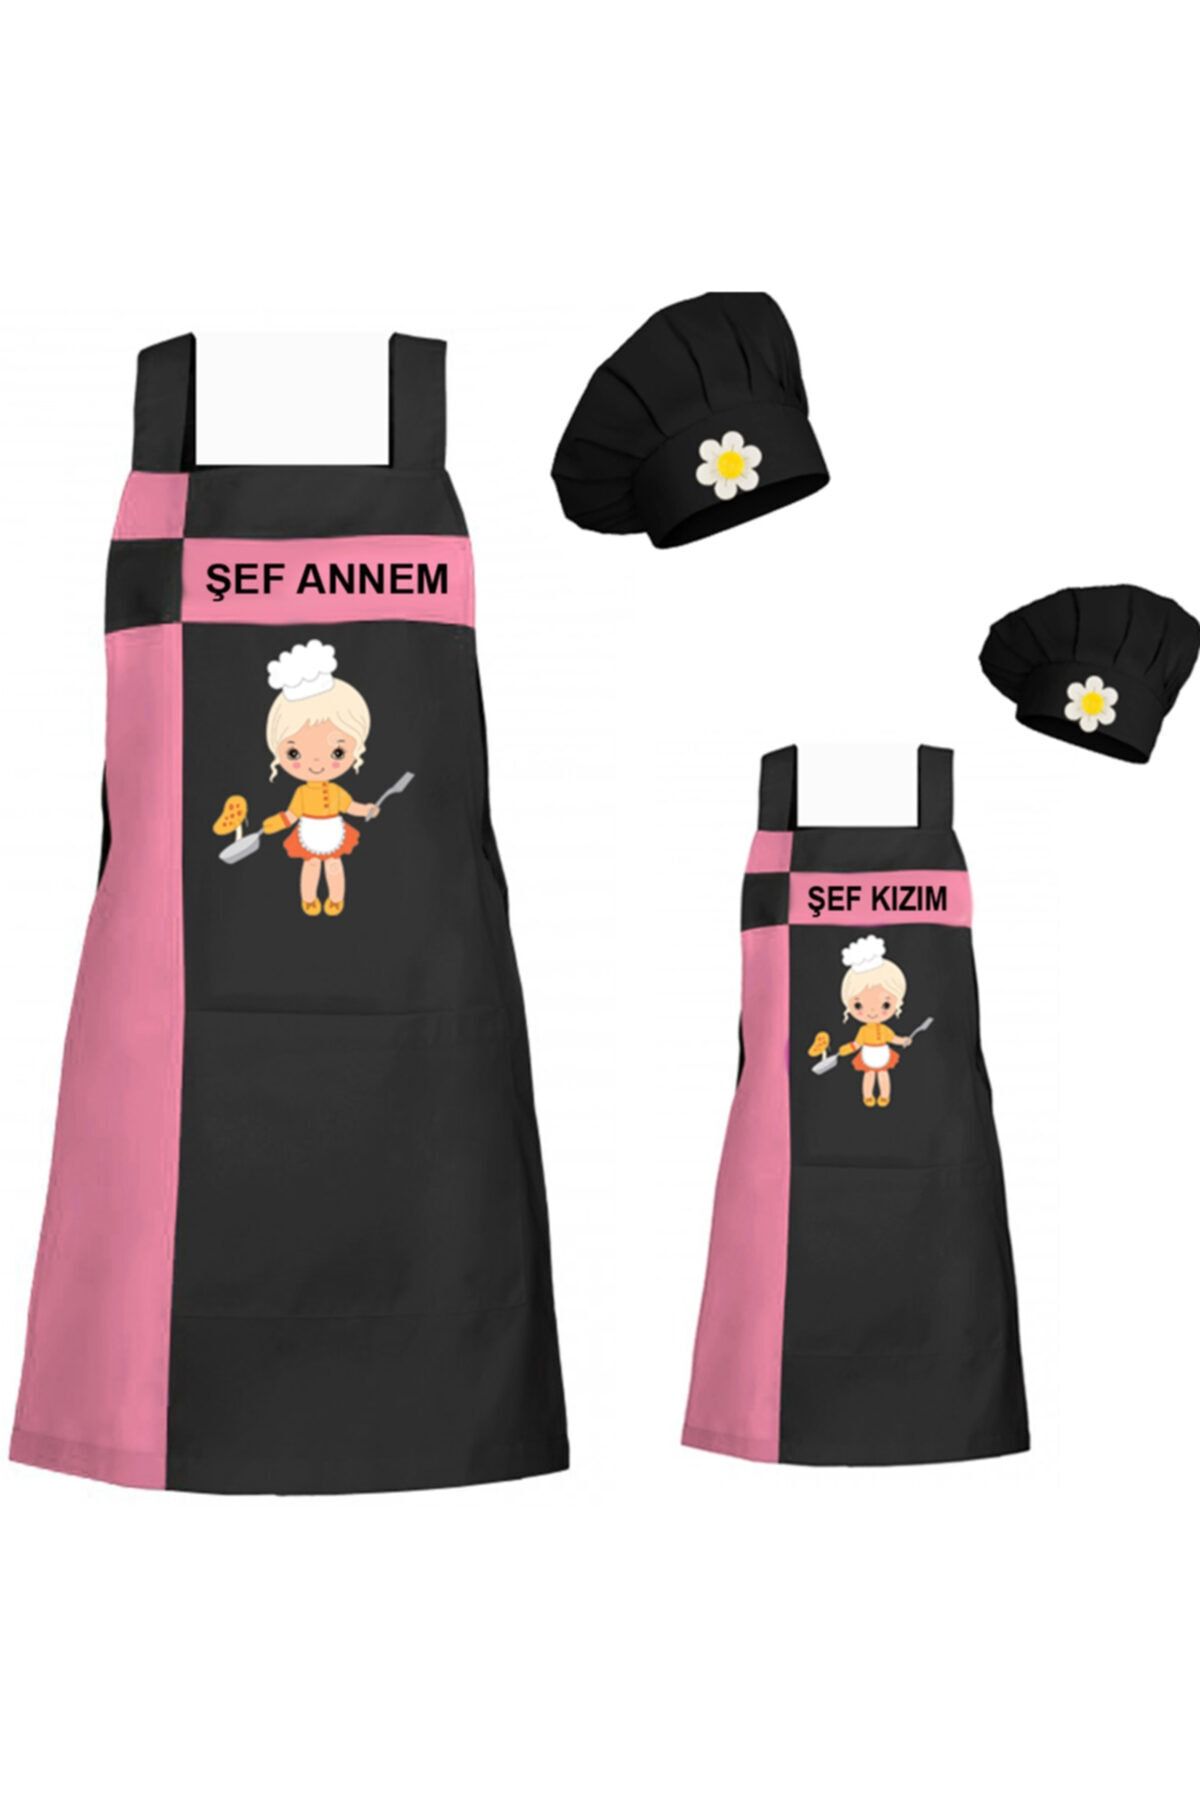 medusaforma Anne Kız Önlük Takım Çocuk Aşçı Kıyafeti Master Şef Mutfak Önlüğü Chef Şef Önlük Kombinleri - Pembe